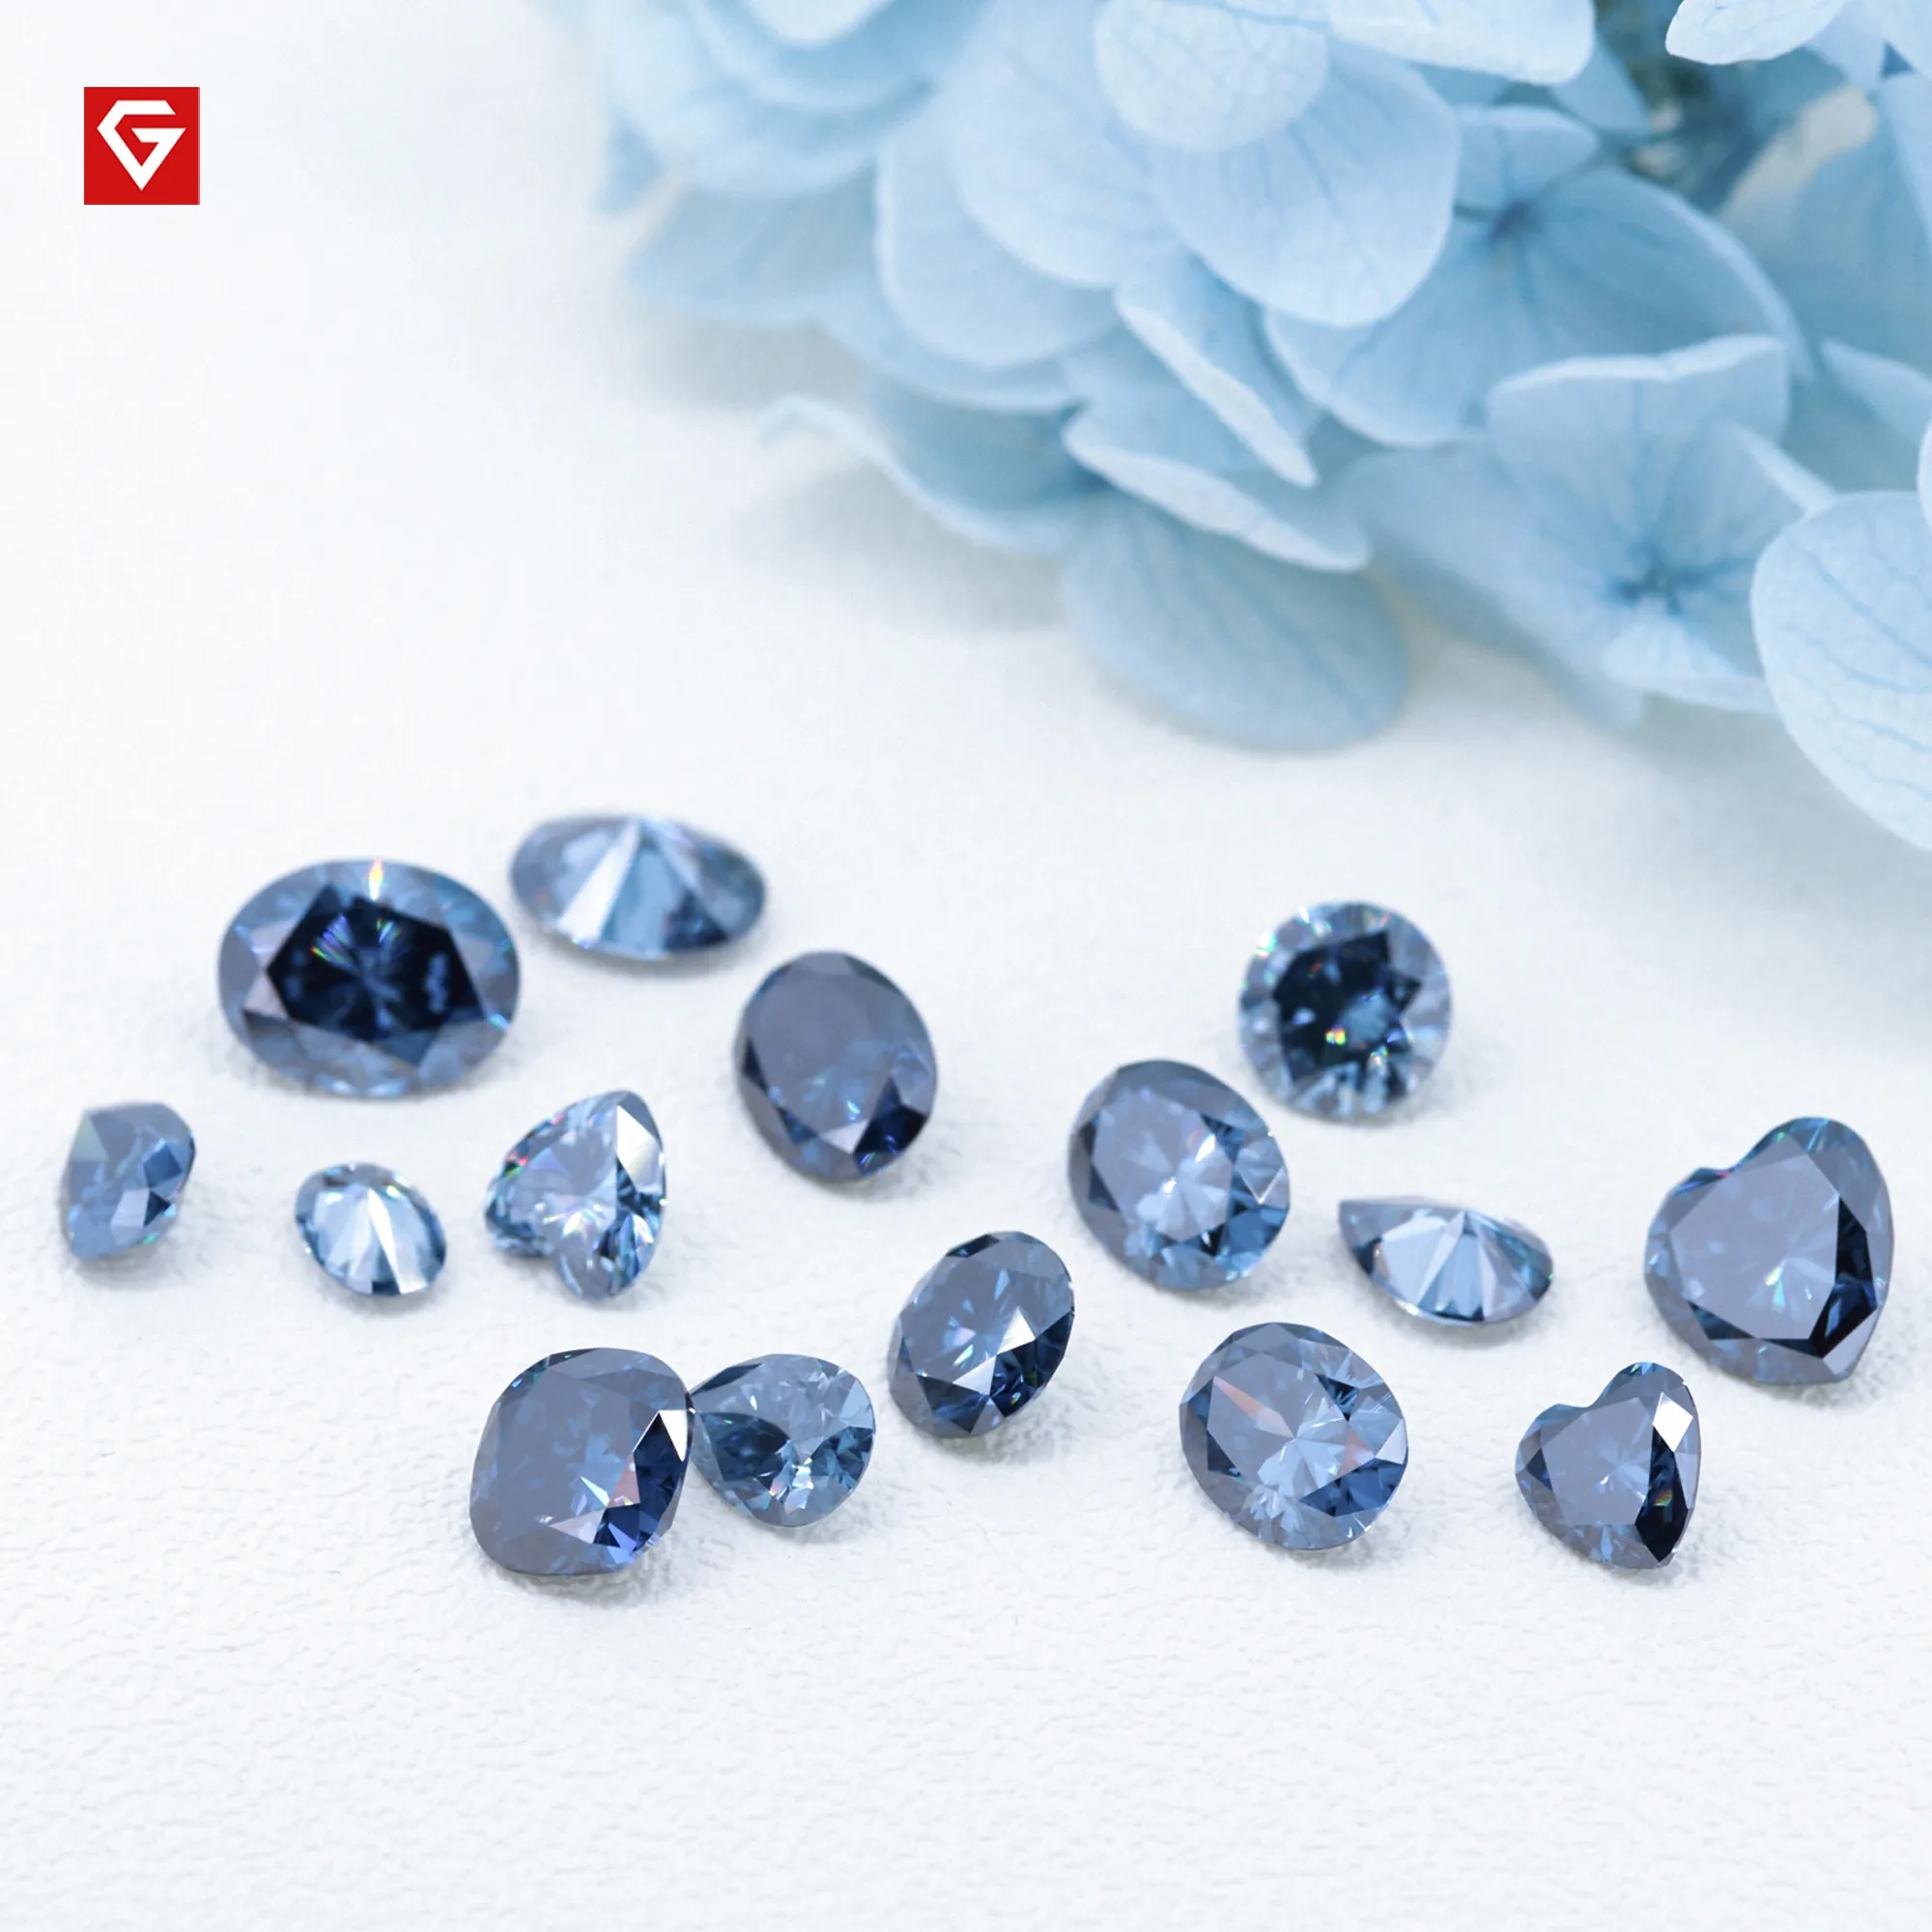 GIGAJEWE Blauwe Kleur Emerald cut VVS1 moissanite diamant 1-3ct voor sieraden maken Losse edelstenen281J